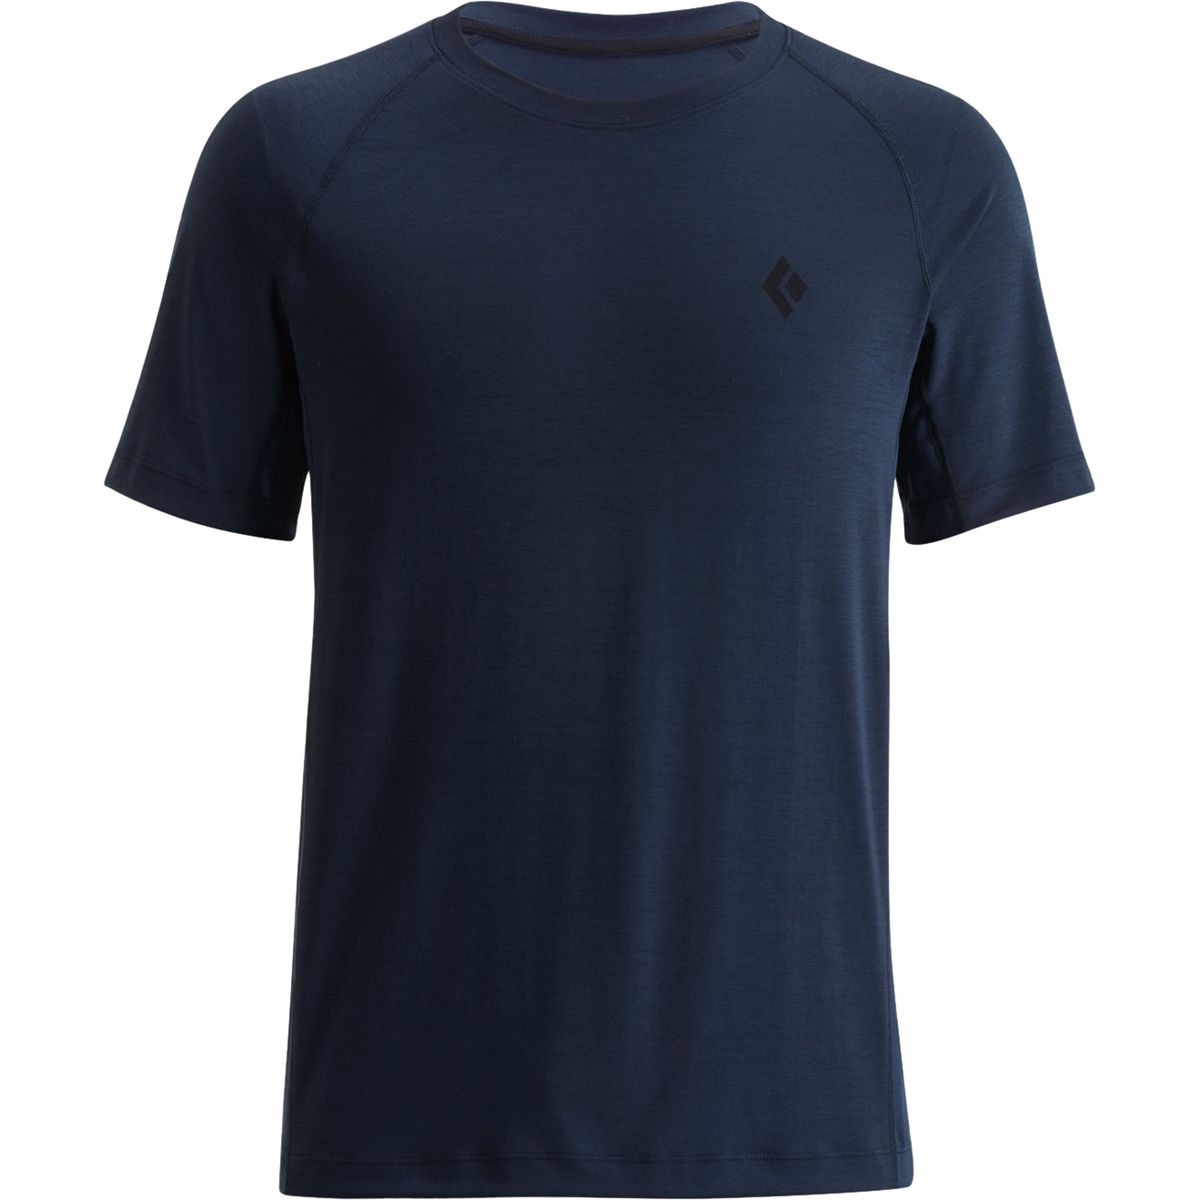 Warbonnet Short-Sleeve T-Shirt - Men